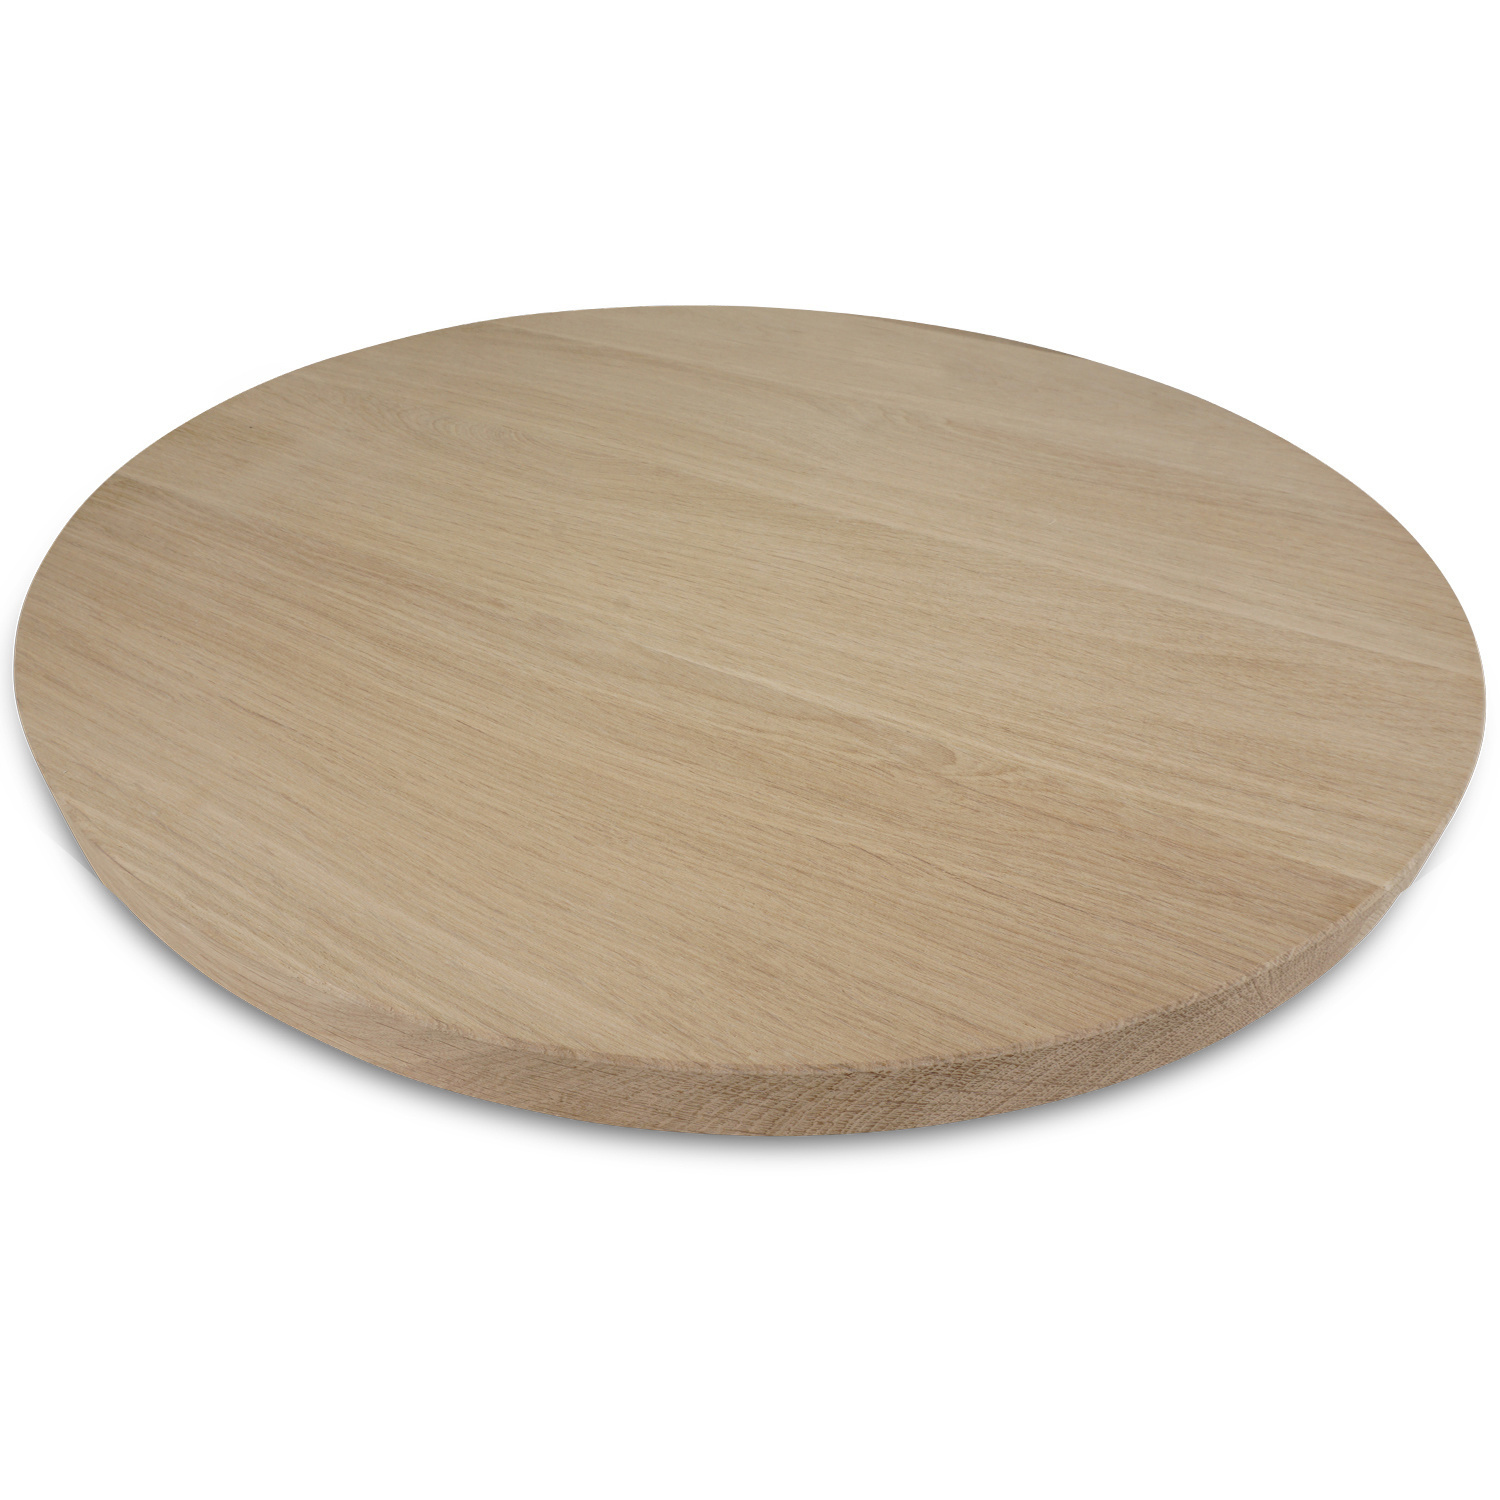  Eiken tafelblad rond - 2,7 cm dik (1-laag) - Diverse afmetingen - optioneel geborsteld - foutvrij Europees eikenhout - met brede lamellen (circa 10-12 cm) - verlijmd kd 10-12%